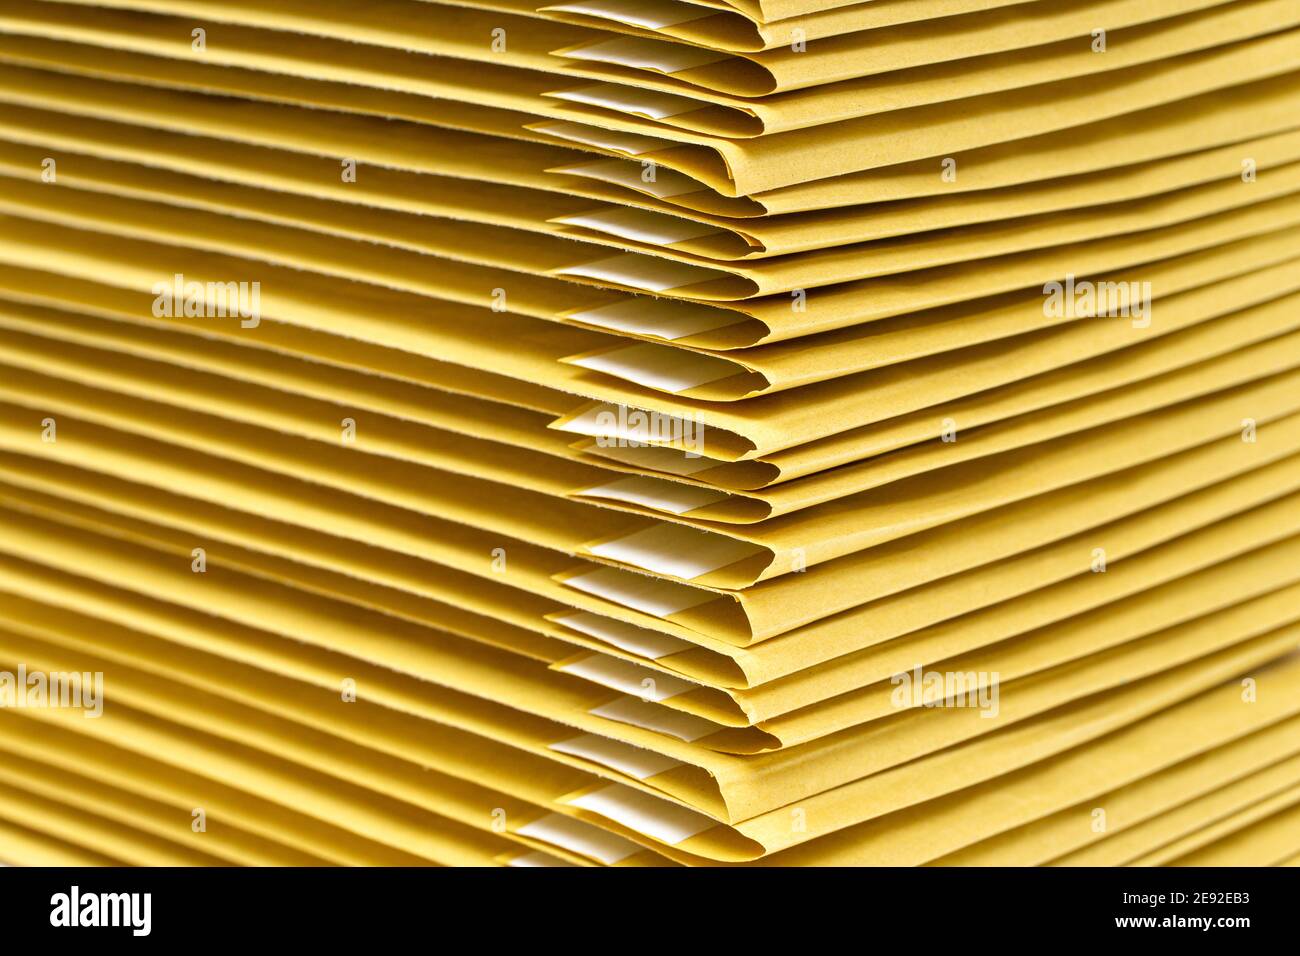 Gros plan d'une pile d'enveloppes matelassées jaunes Banque D'Images